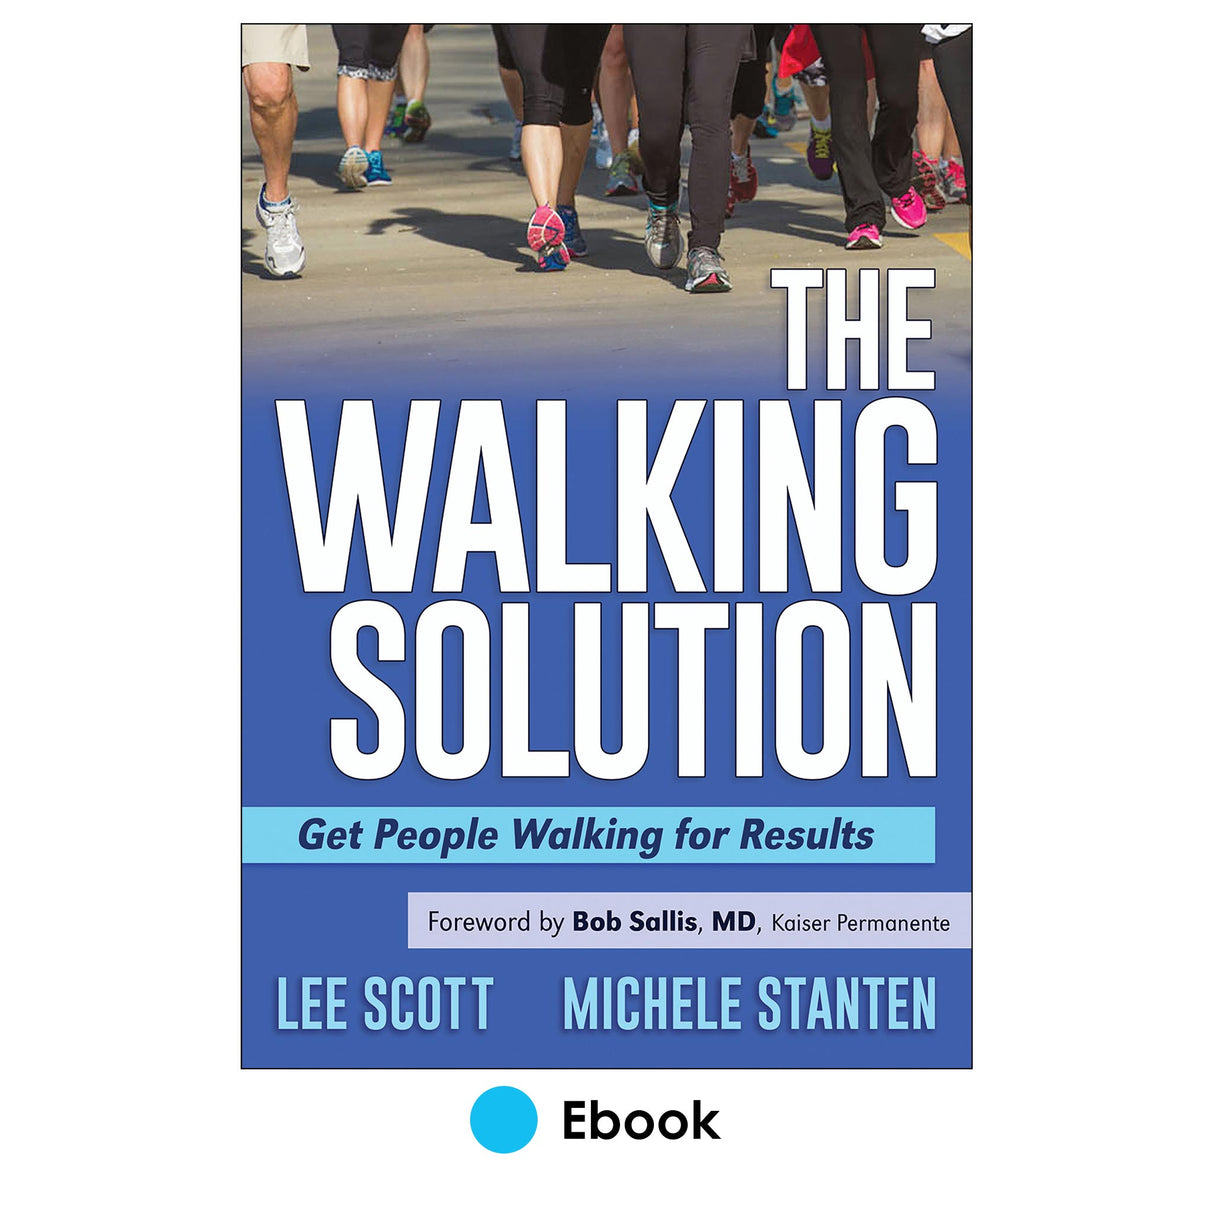 Walking Solution epub, The